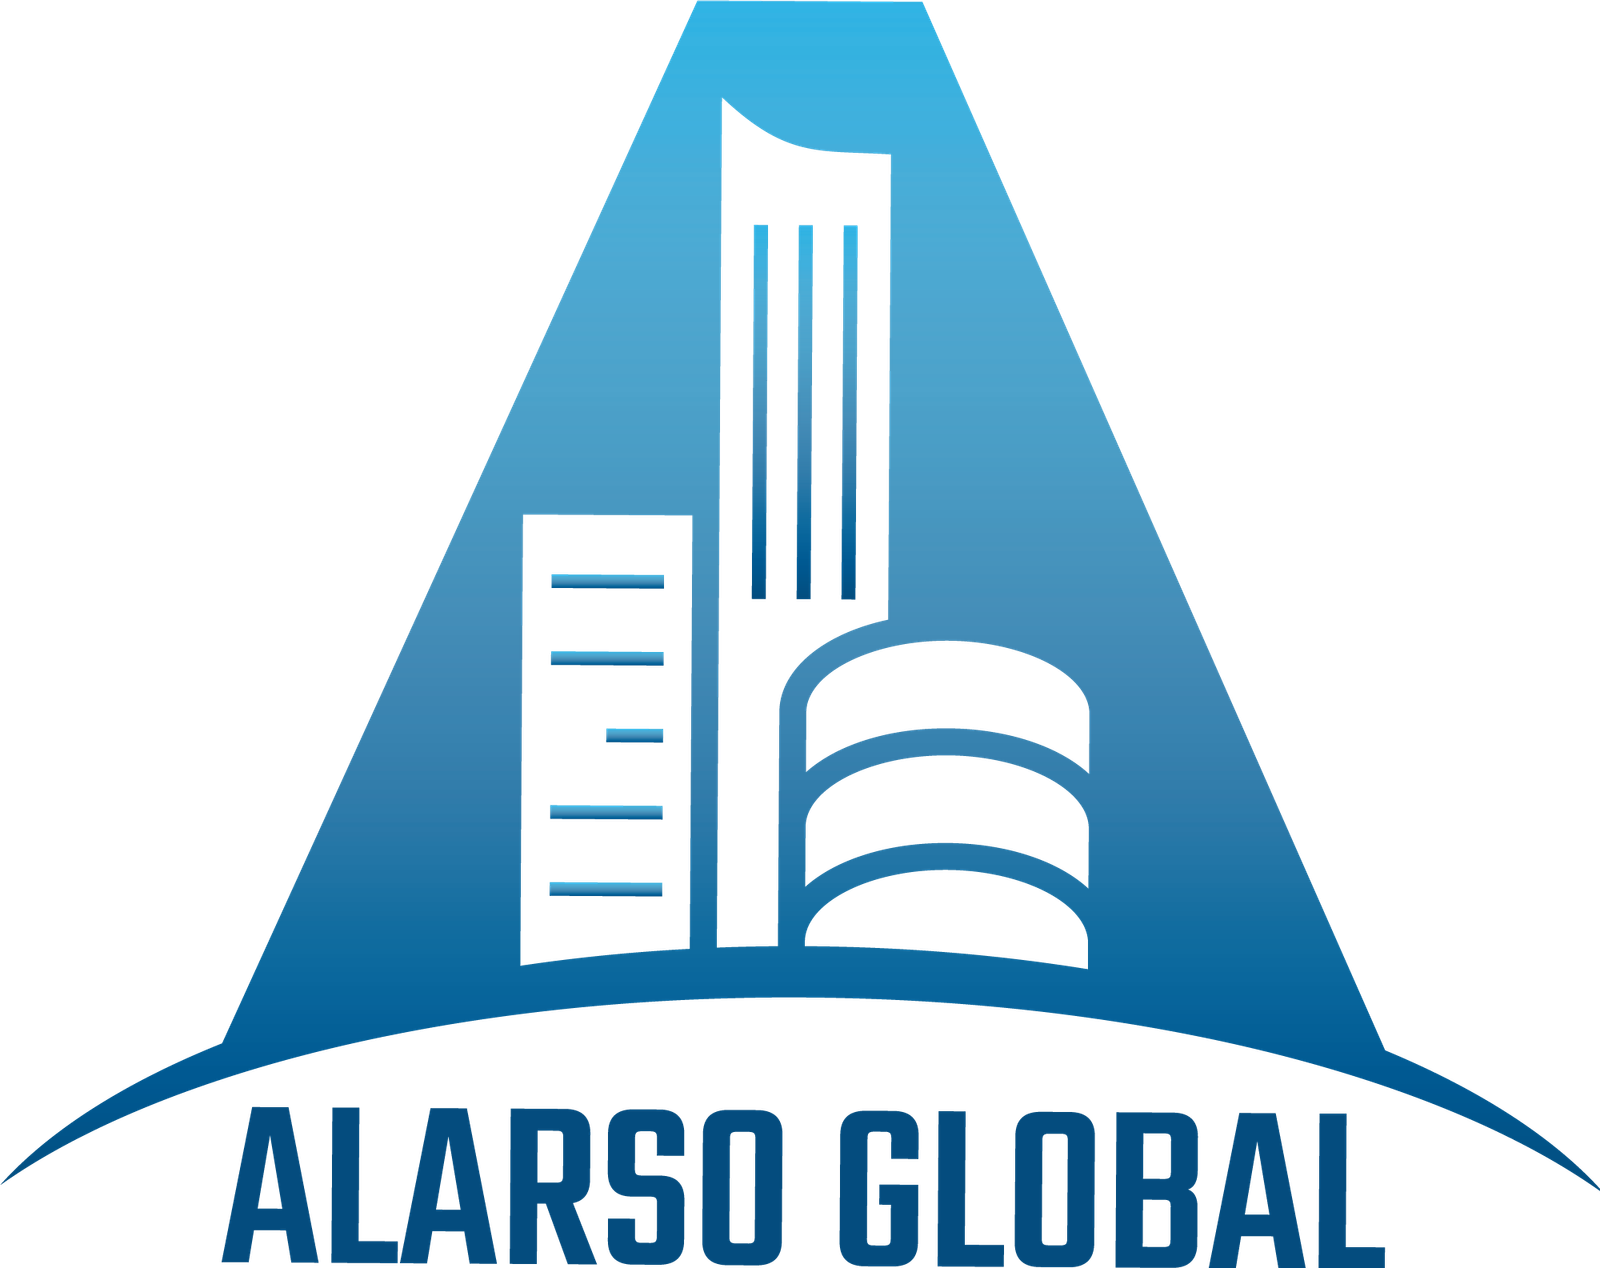 Alarso Global